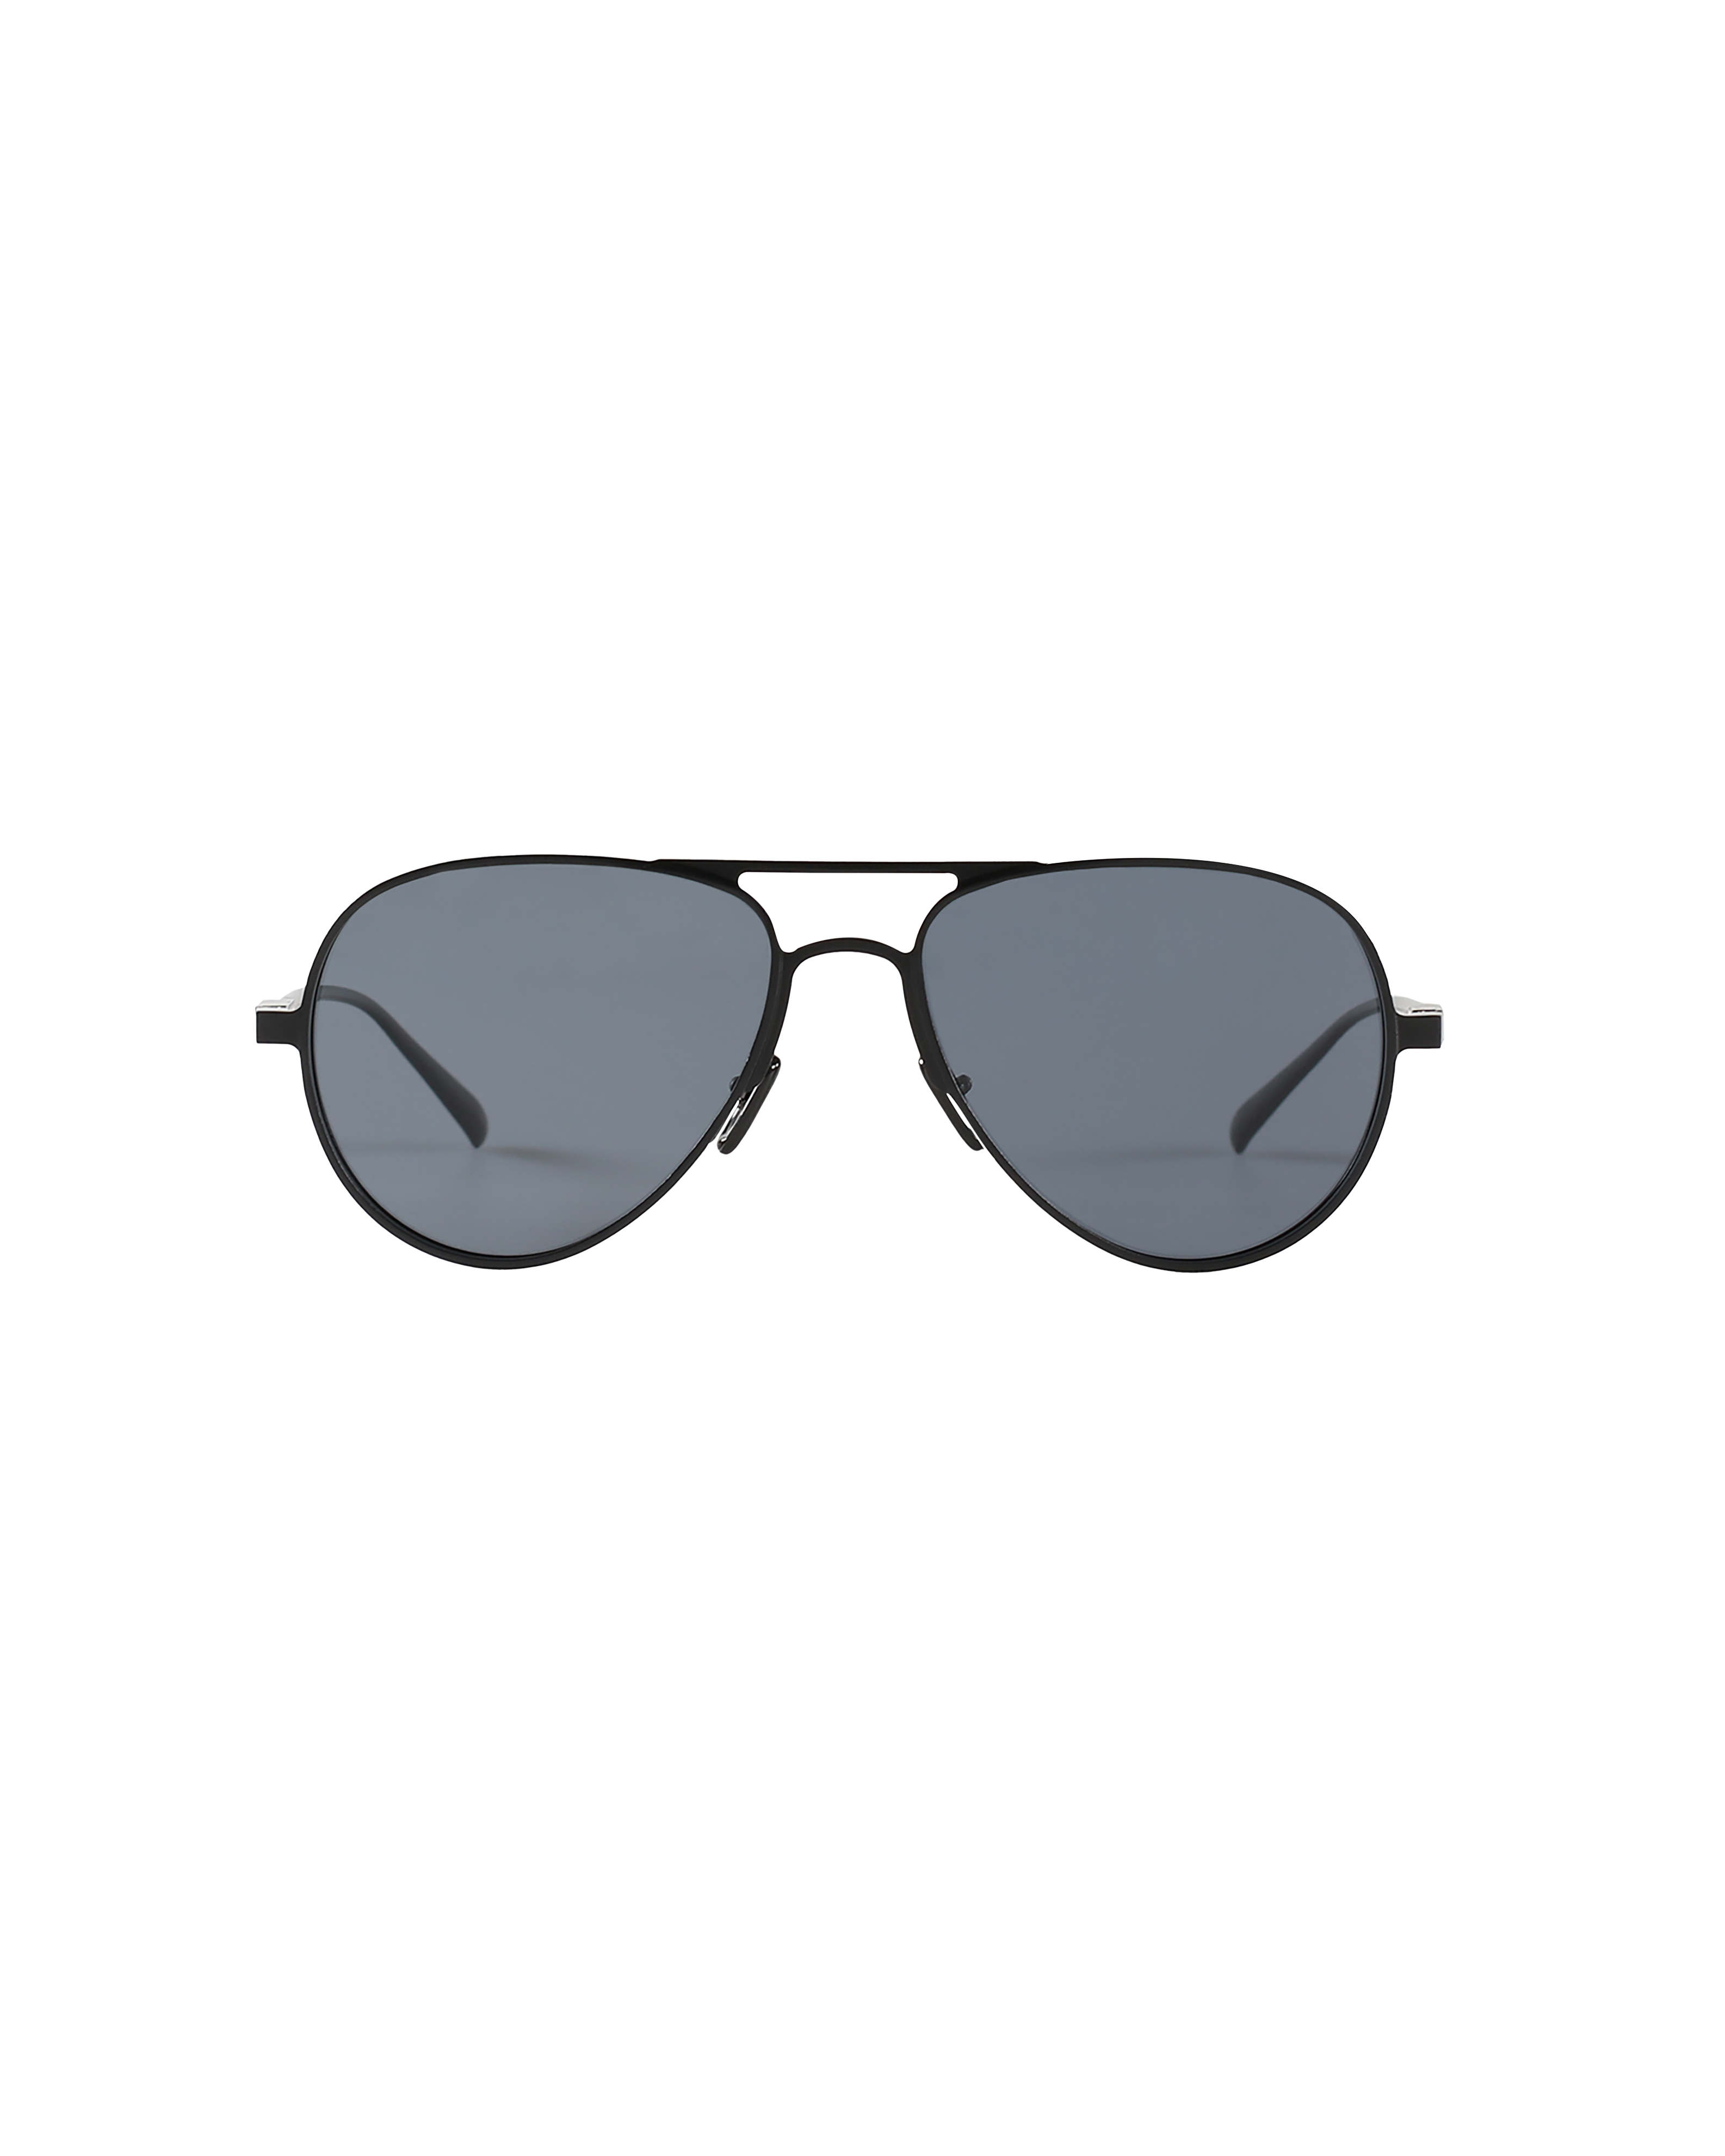 Buy I REBEL Retro Square, Aviator Sunglasses Black For Men & Women Online @  Best Prices in India | Flipkart.com